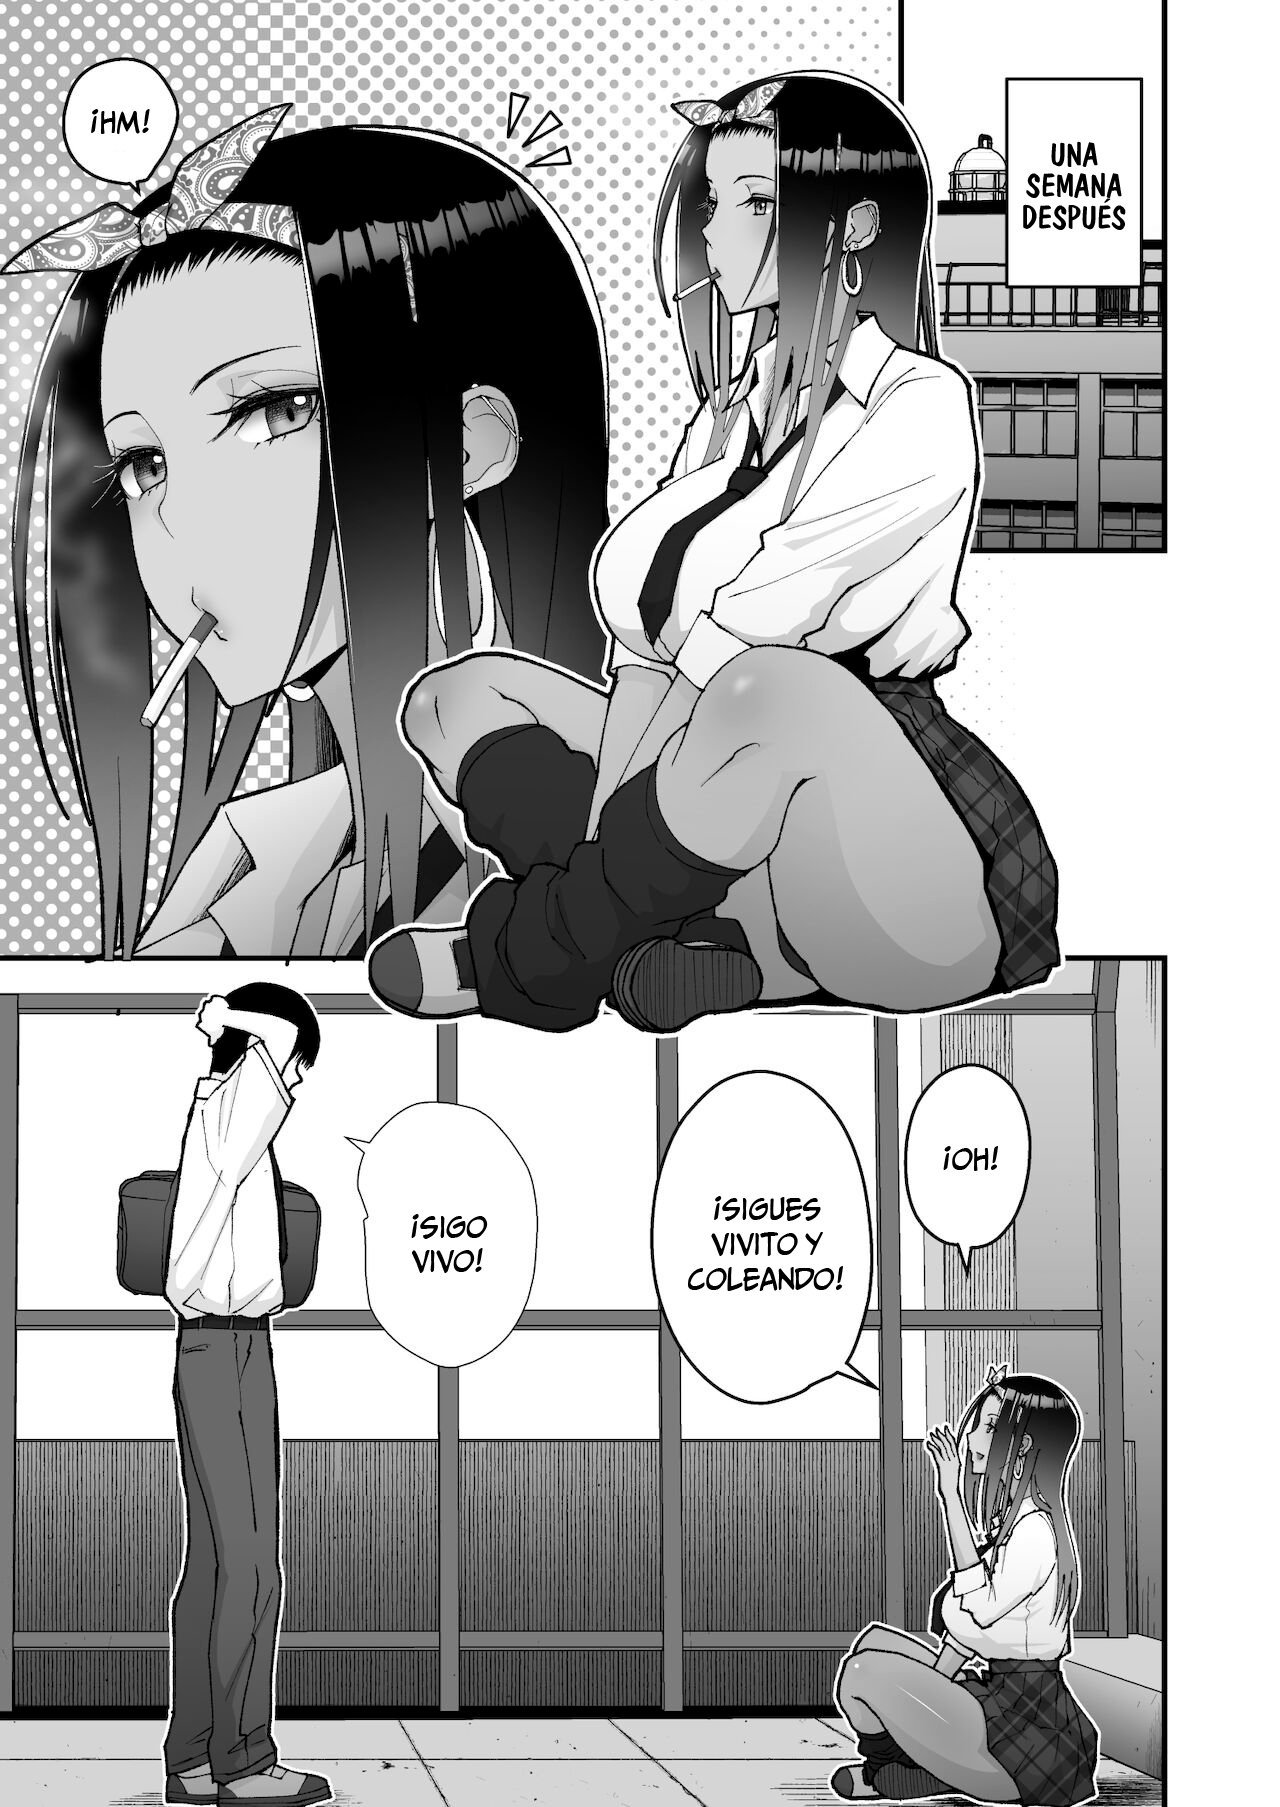 La historia sobre una amorosa gal otaku - 7